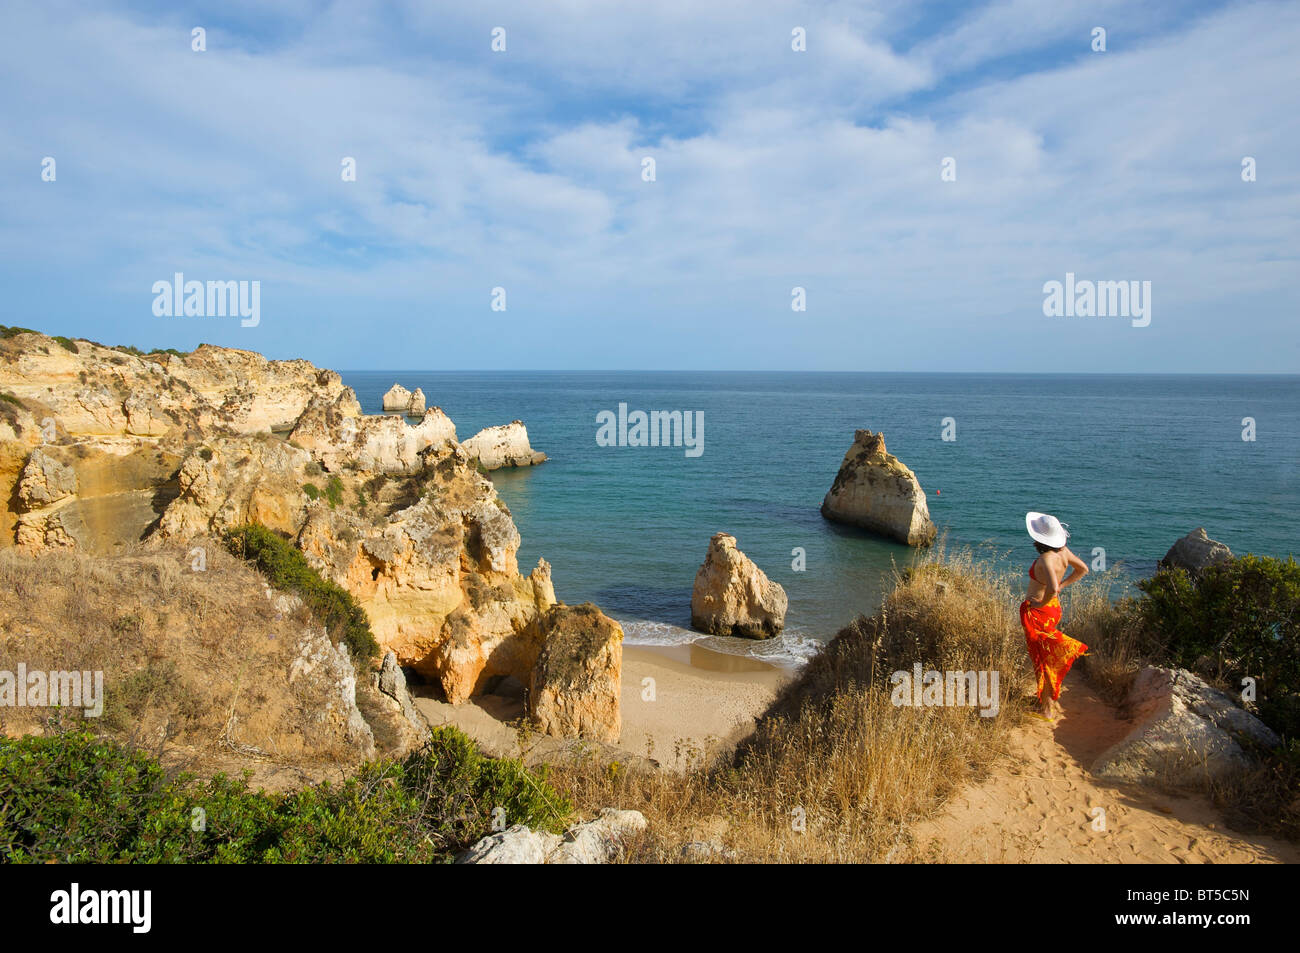 Praia dos Tres Irmaos, Algarve, Portugal Stock Photo